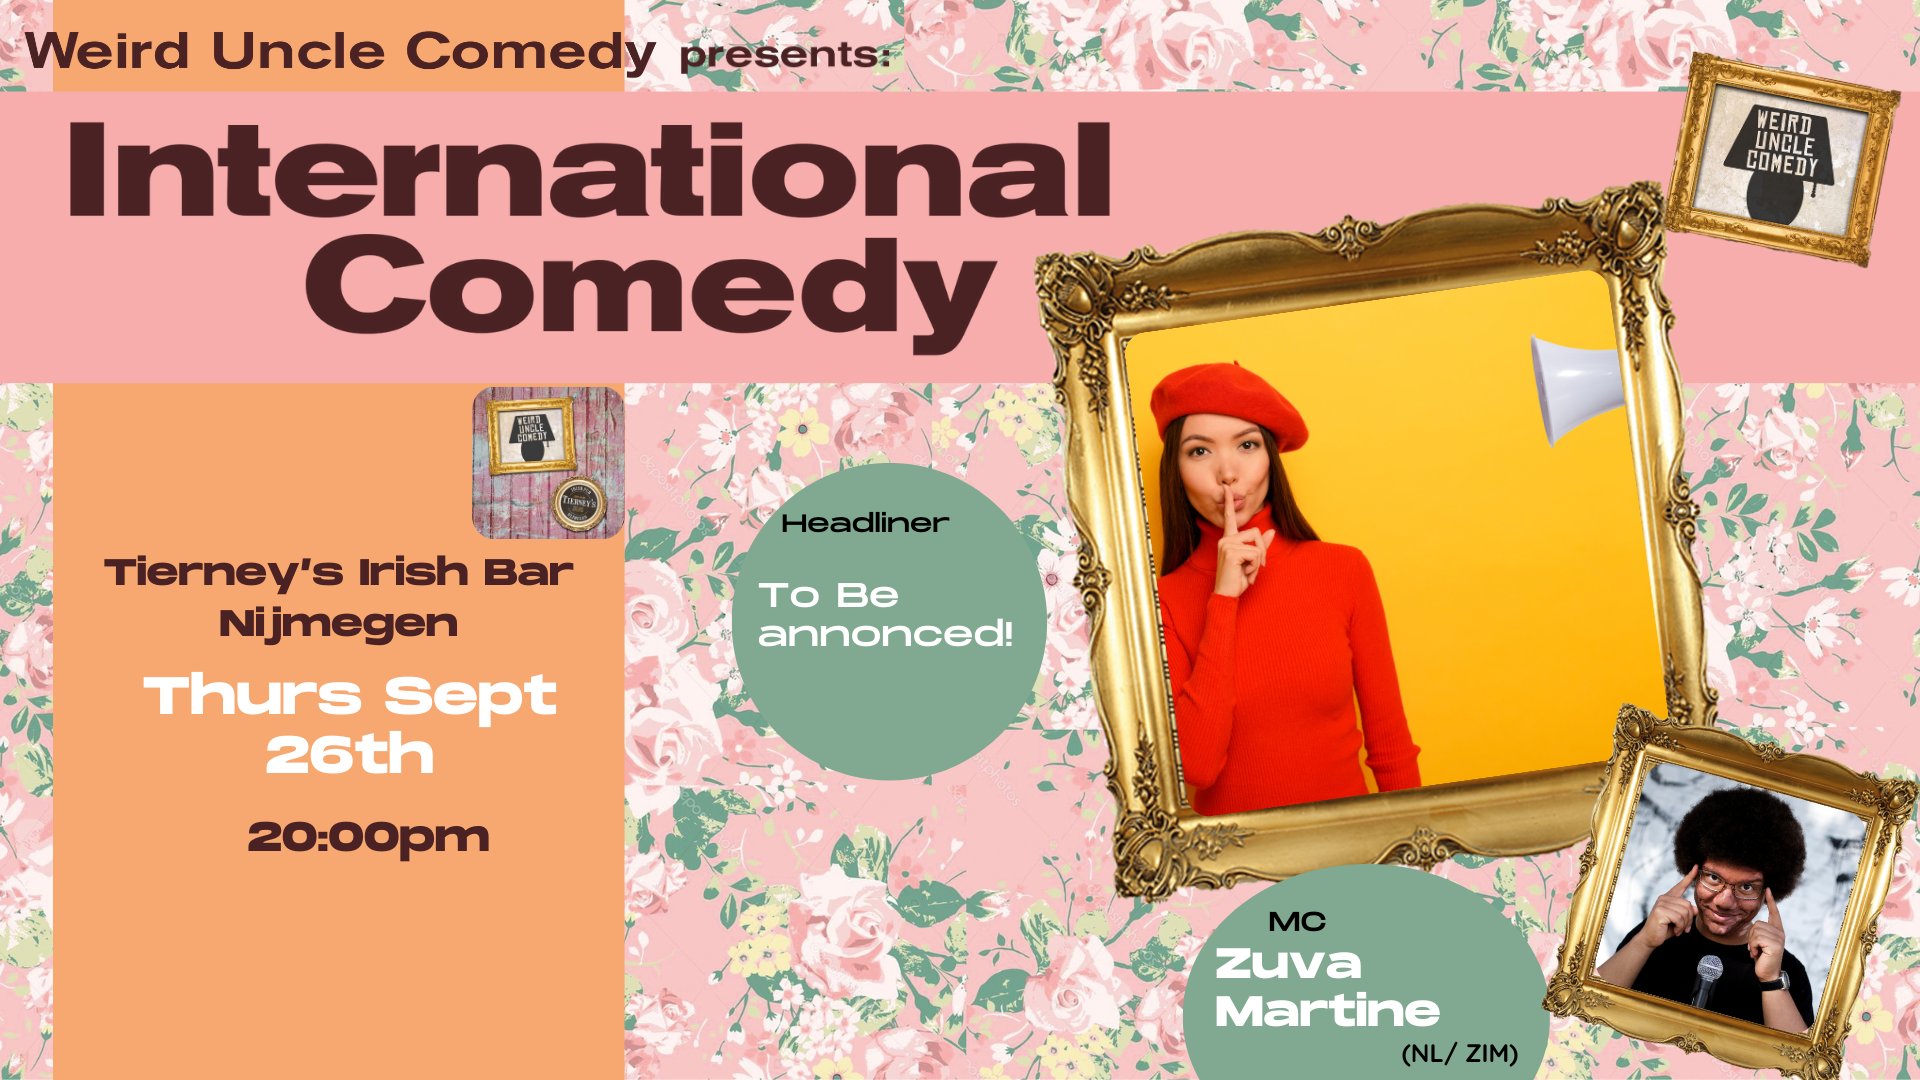 Ticket kopen voor evenement International Stand Up Comedy @Tierneys Nijmgen  H/L to be announced